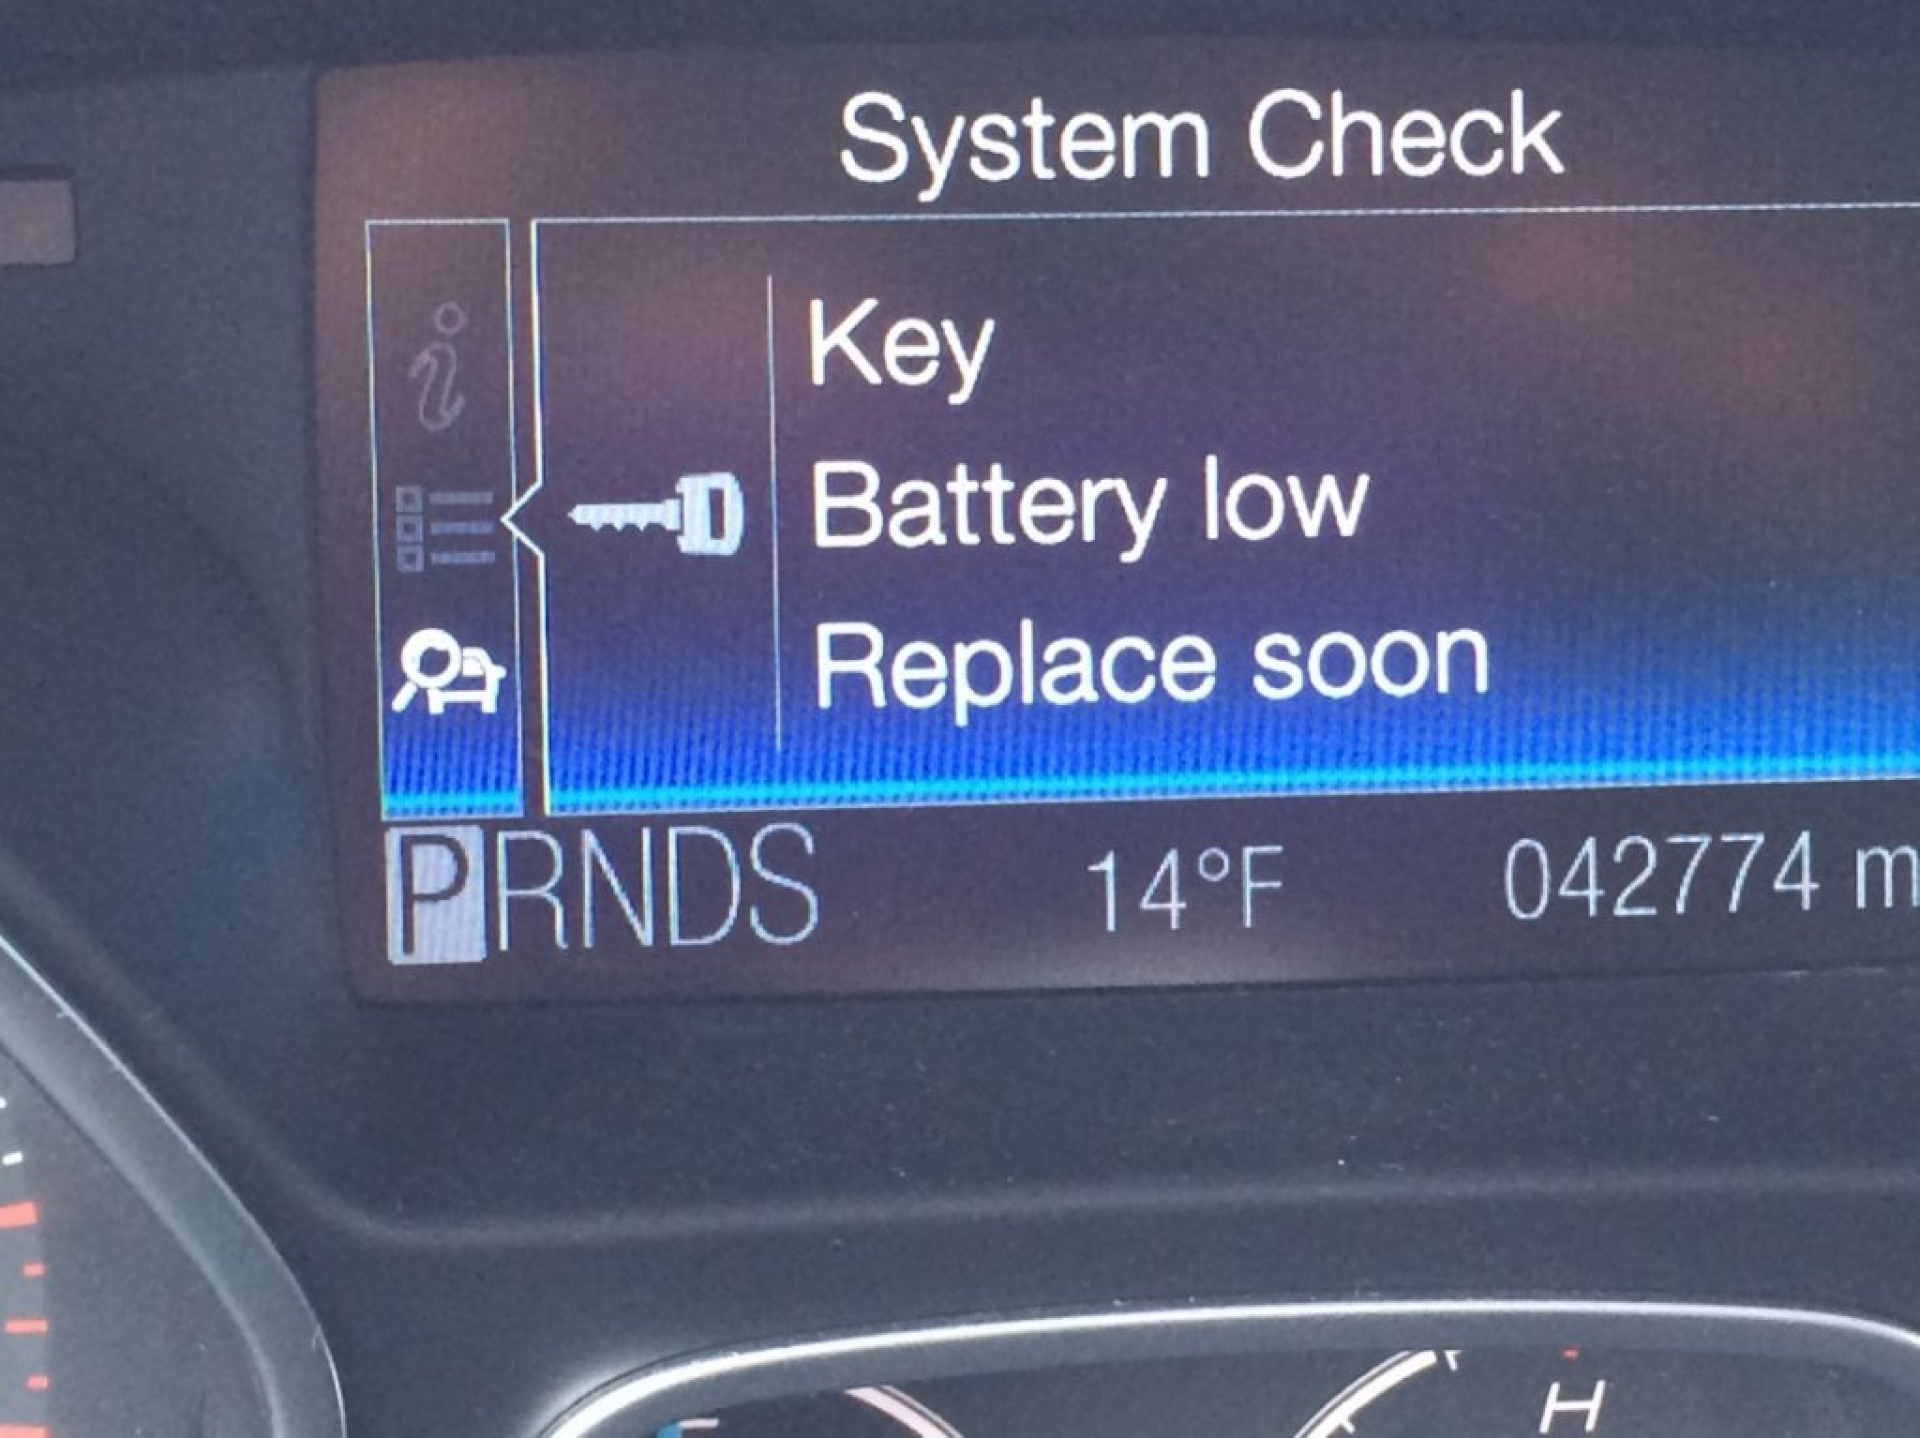 Key Battery Low Replace Soon là gì? Cách Khắc Phục và Giải Pháp Hiệu Quả